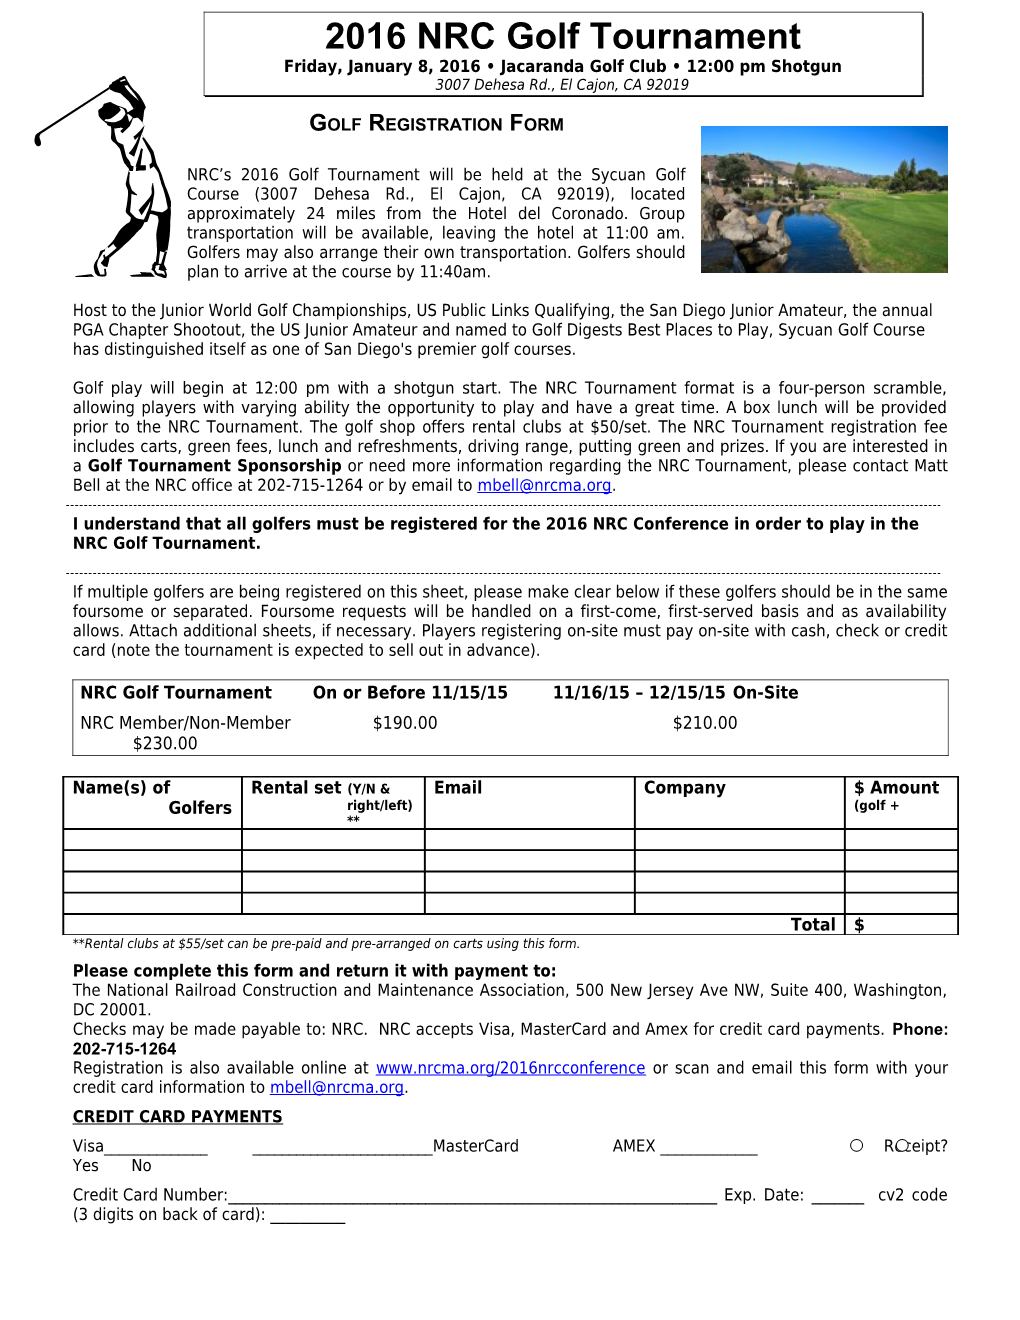 Golf Registration Form